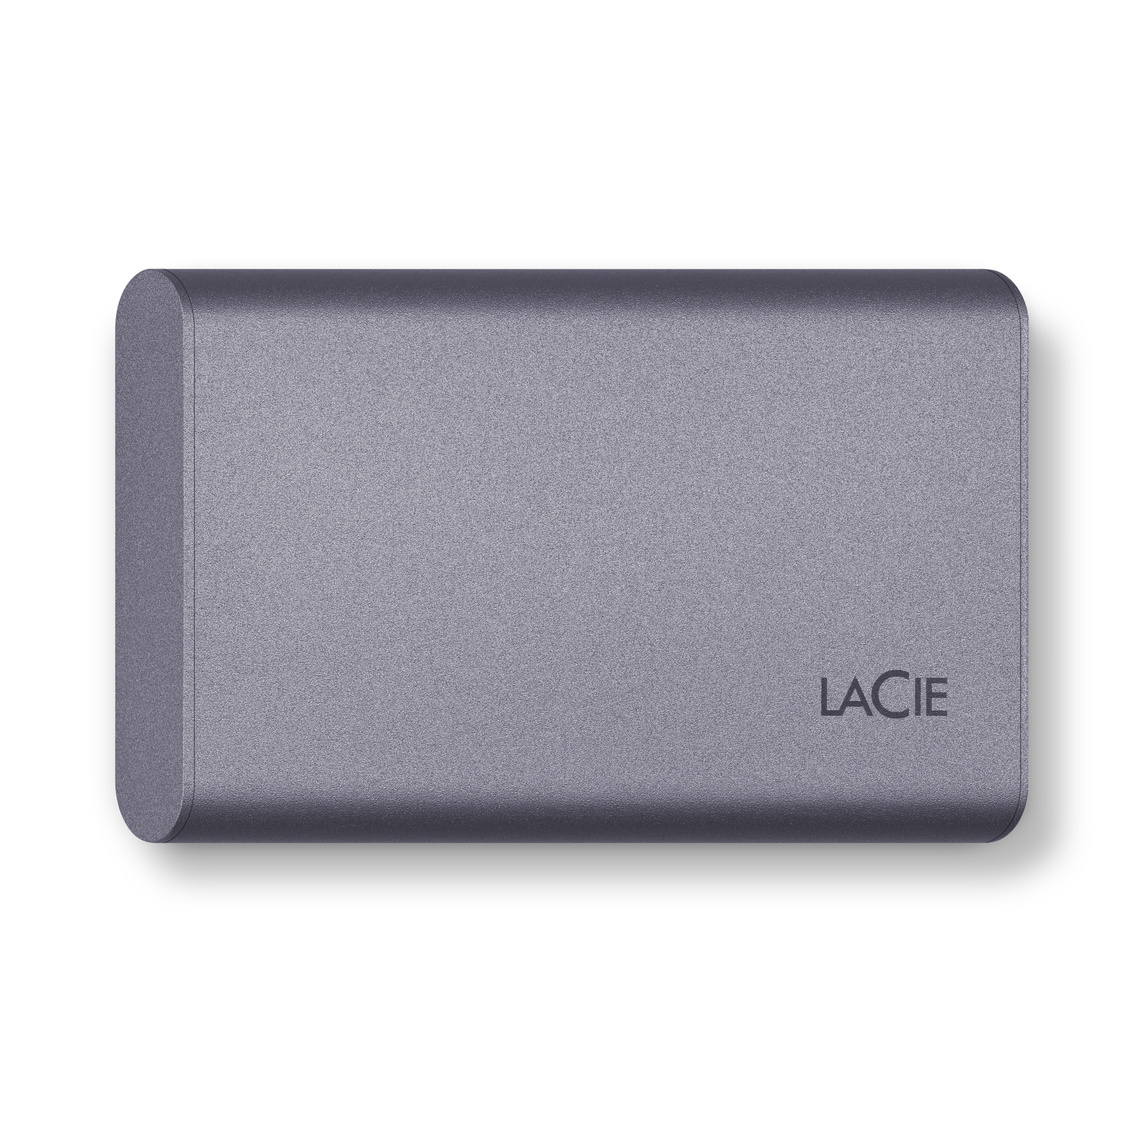 Le disque Mobile SSD Secure USB-C 500 Go de LaCie vous offre vitesses de transfert élevées et chiffrement matériel activé.